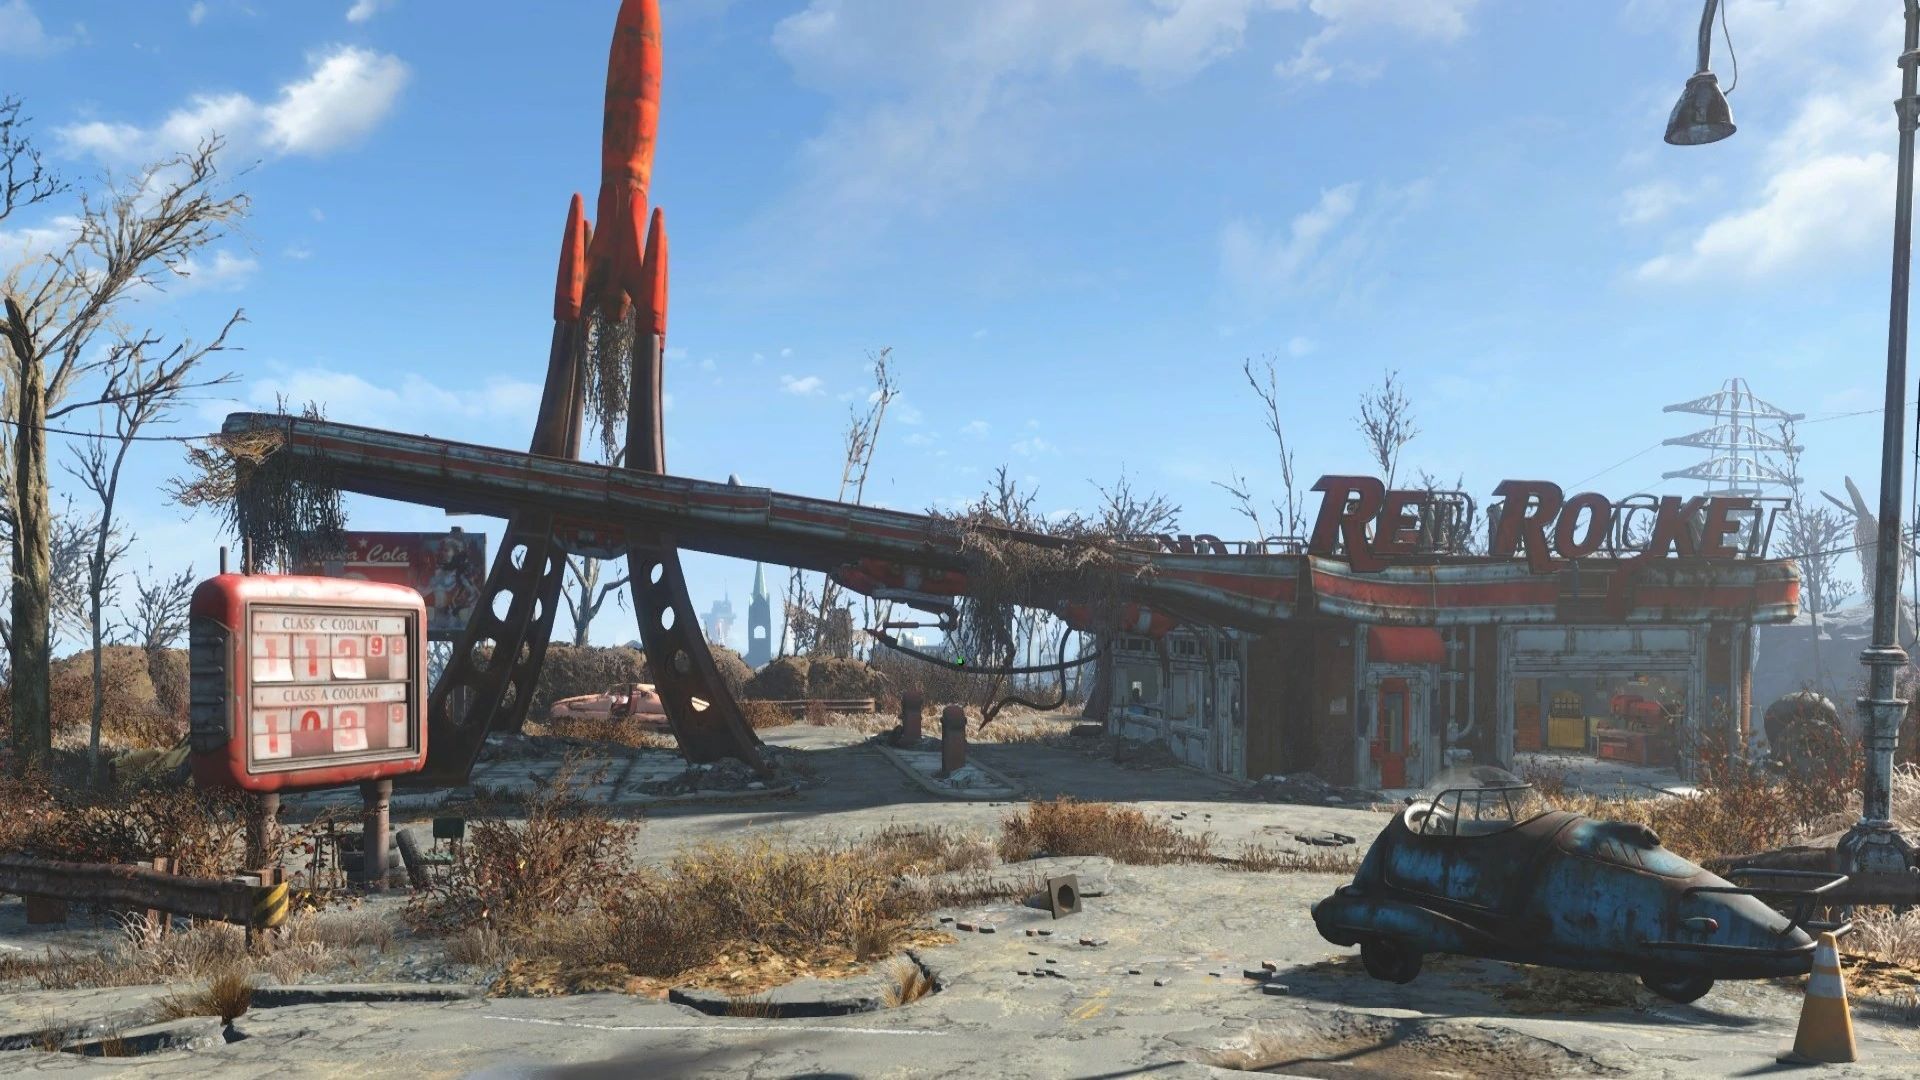 تصاویر جدید از مراحل فیلمبرداری سریال Fallout